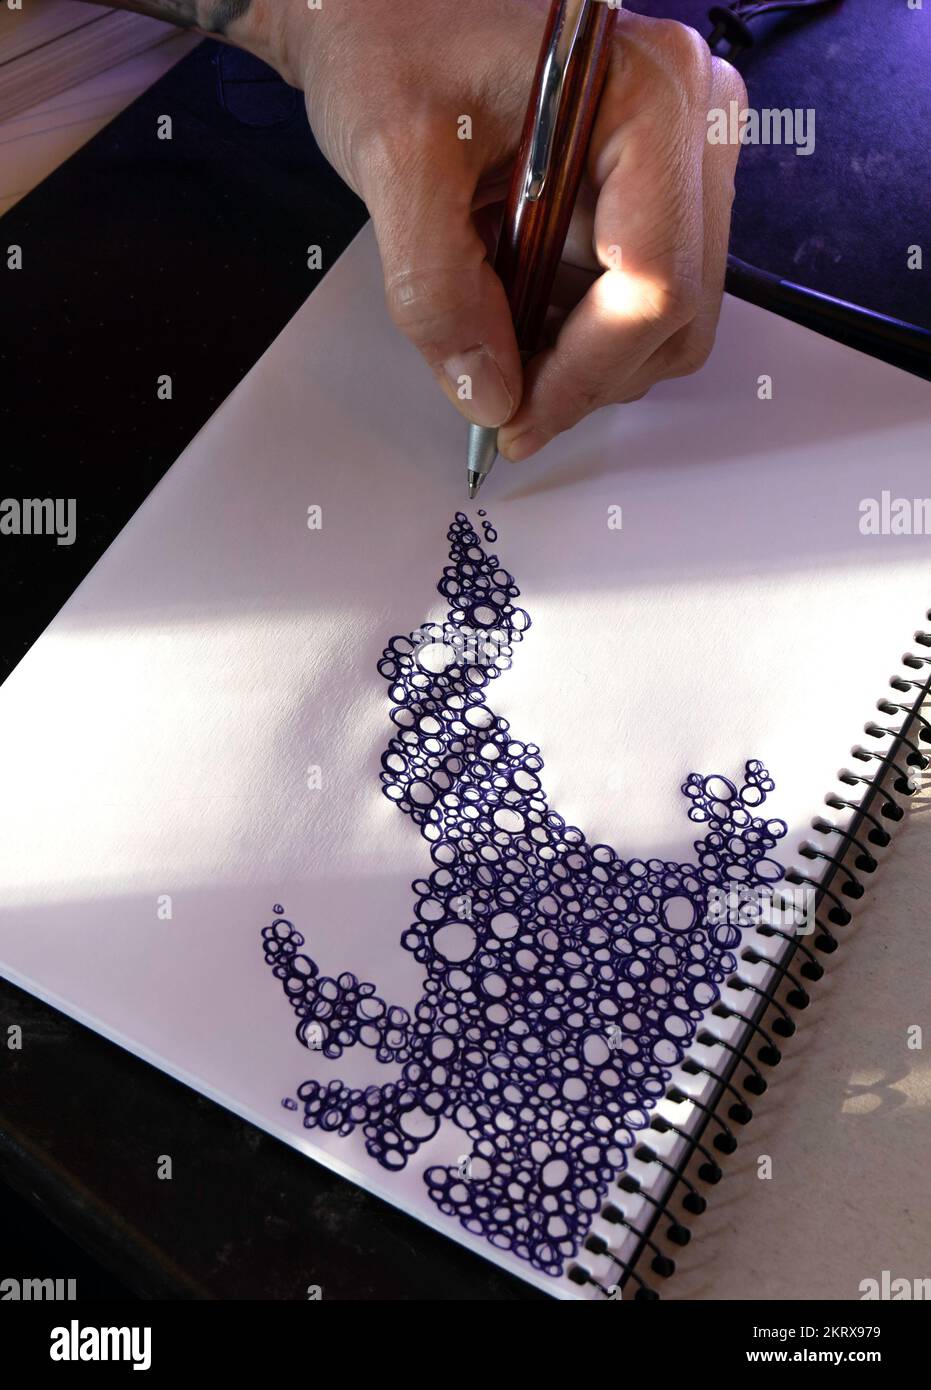 Gros plan d'une main dessinant un motif de bulles griffées sur un album vierge. Ennui, concept de créativité Banque D'Images